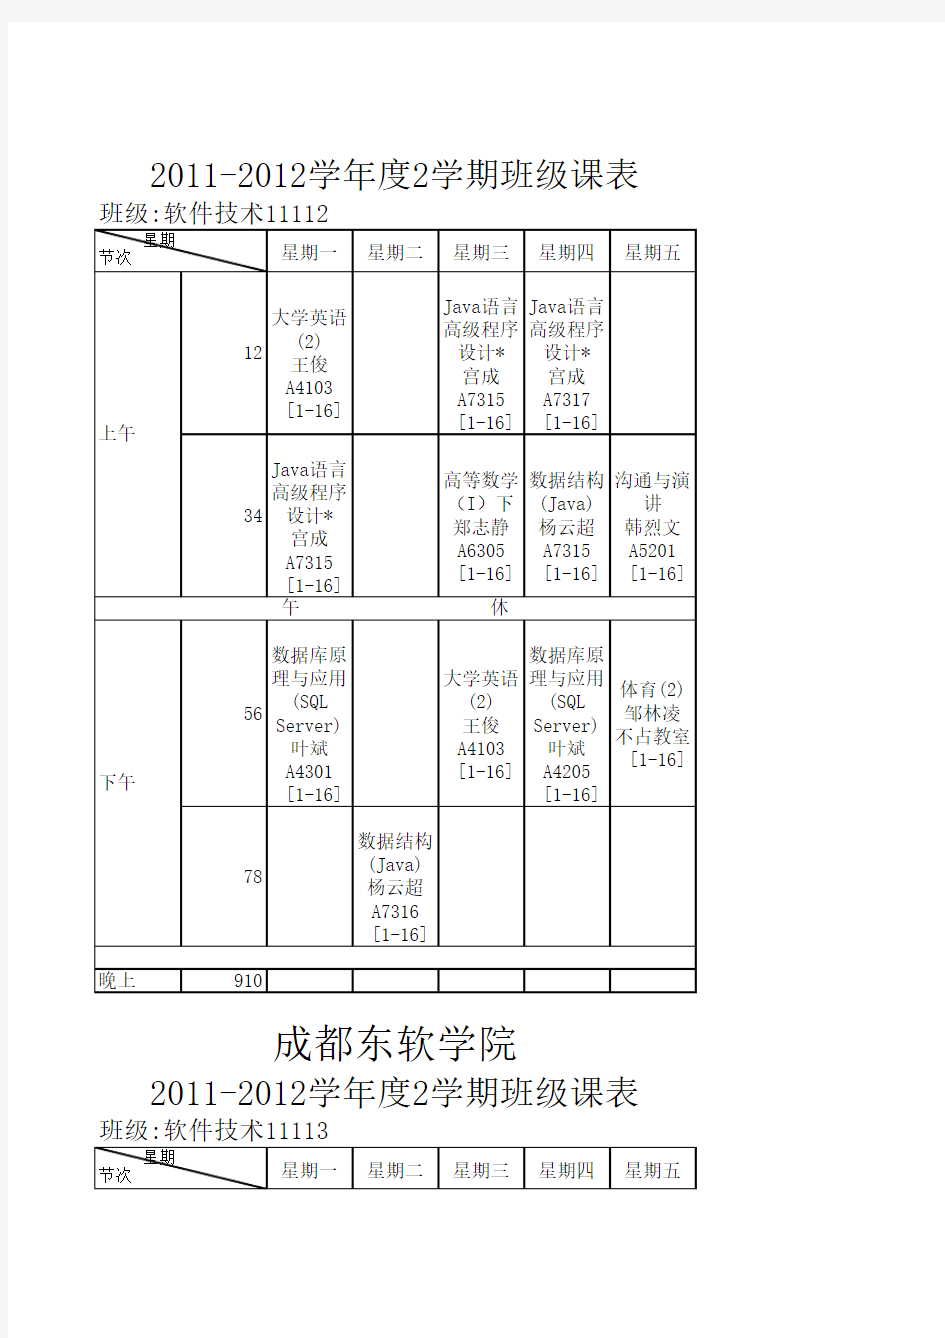 2011-2012第二学期课表